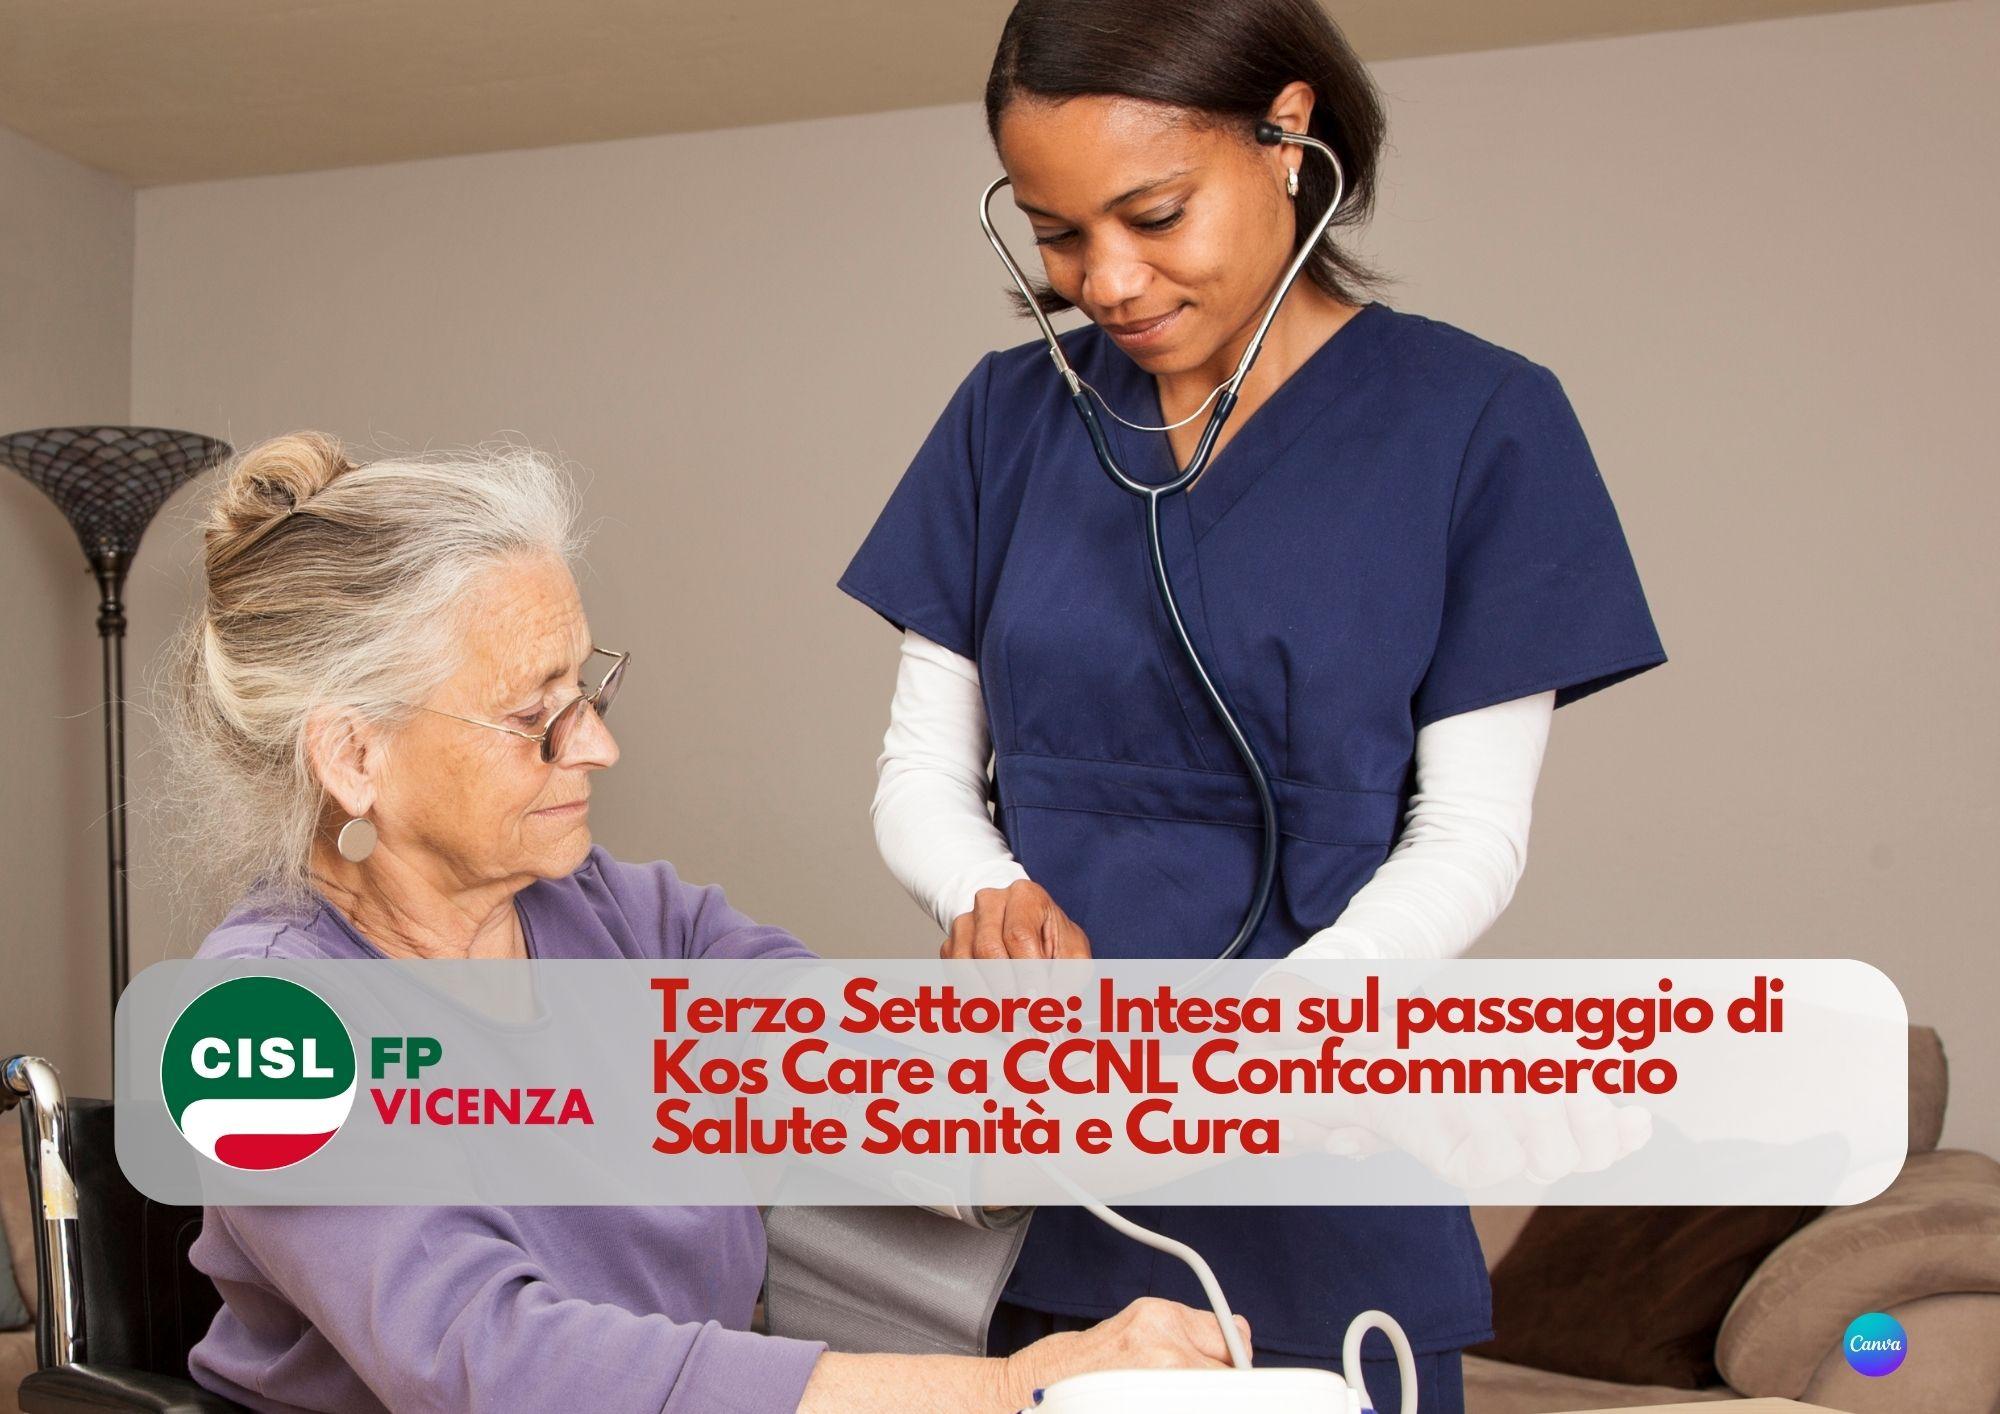 CISL FP Vicenza. Terzo Settore: Intesa sul passaggio di Kos Care a CCNL Confcommercio Salute Sanità e Cura